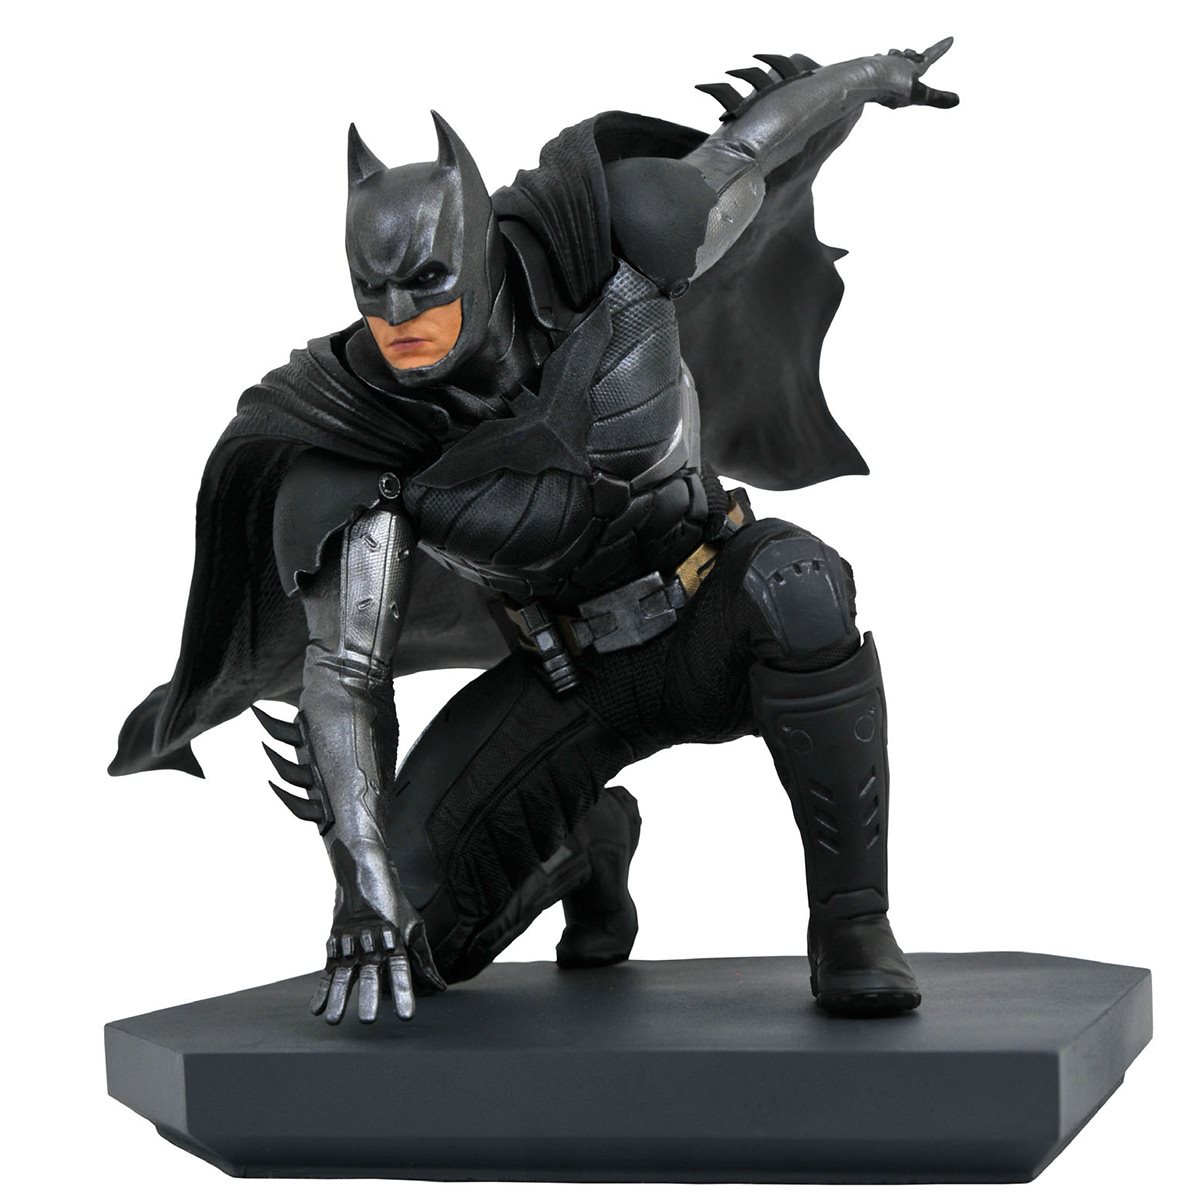 injustice batman figure